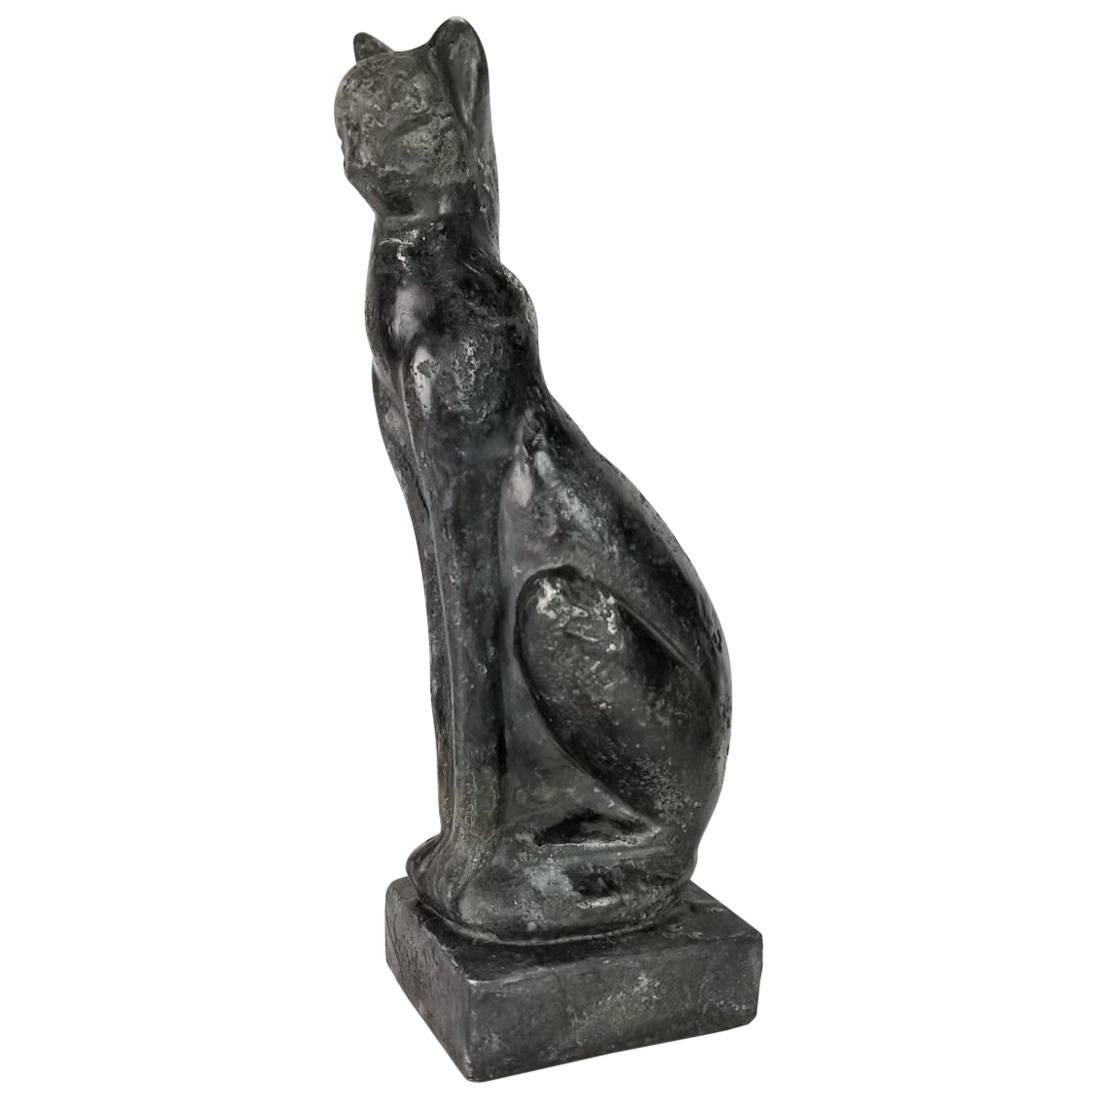 Midcentury Art Deco-Style Black Siamese Cat Sculpture